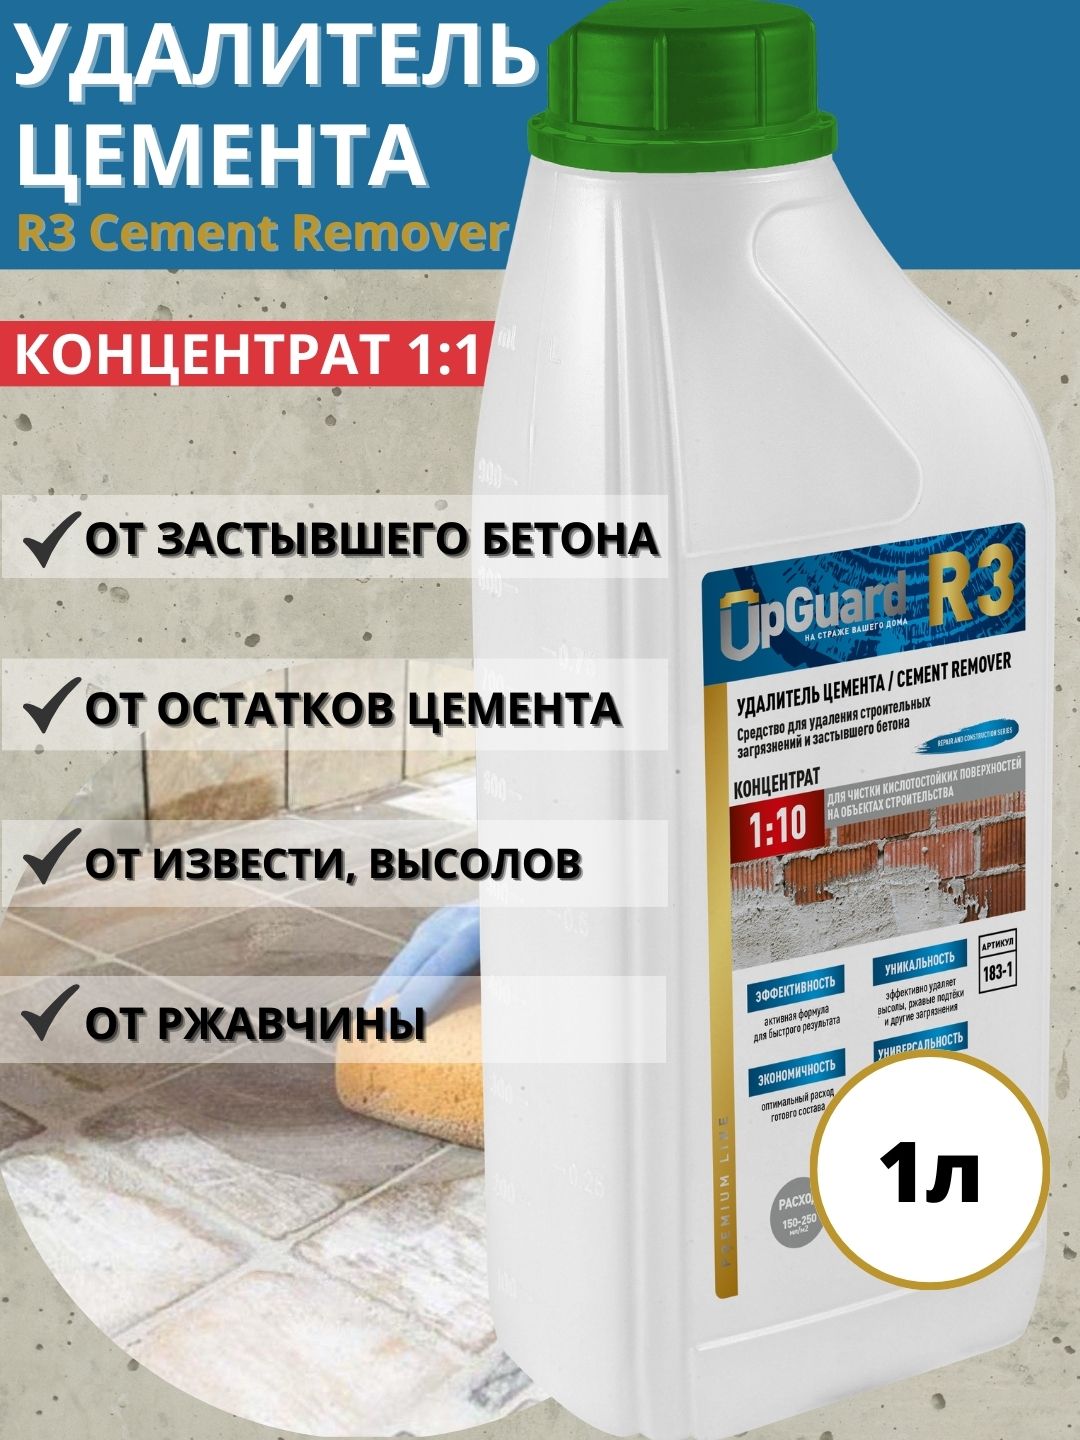 Удалитель цемента UpGUARD R3 Cement Remover концентрат 1:10, 1л удалитель известковых отложений и уриновых glutoclean